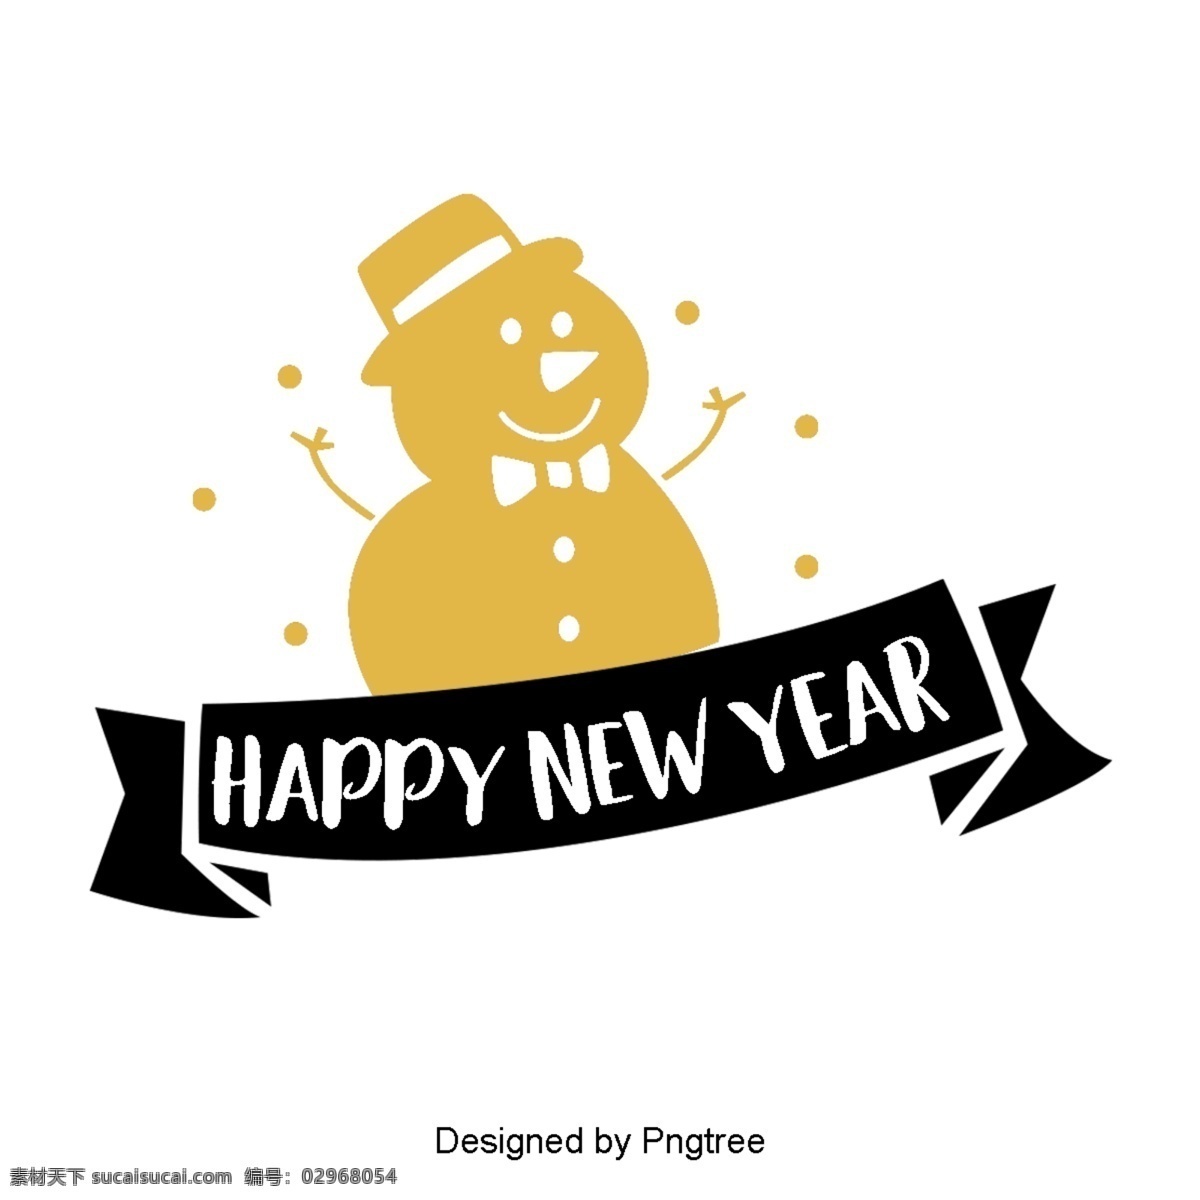 新 年 英国 字体 装饰 金色 黑色 新年 2019 二千一十九 圣诞 彩带 礼品 英语 庆祝春节